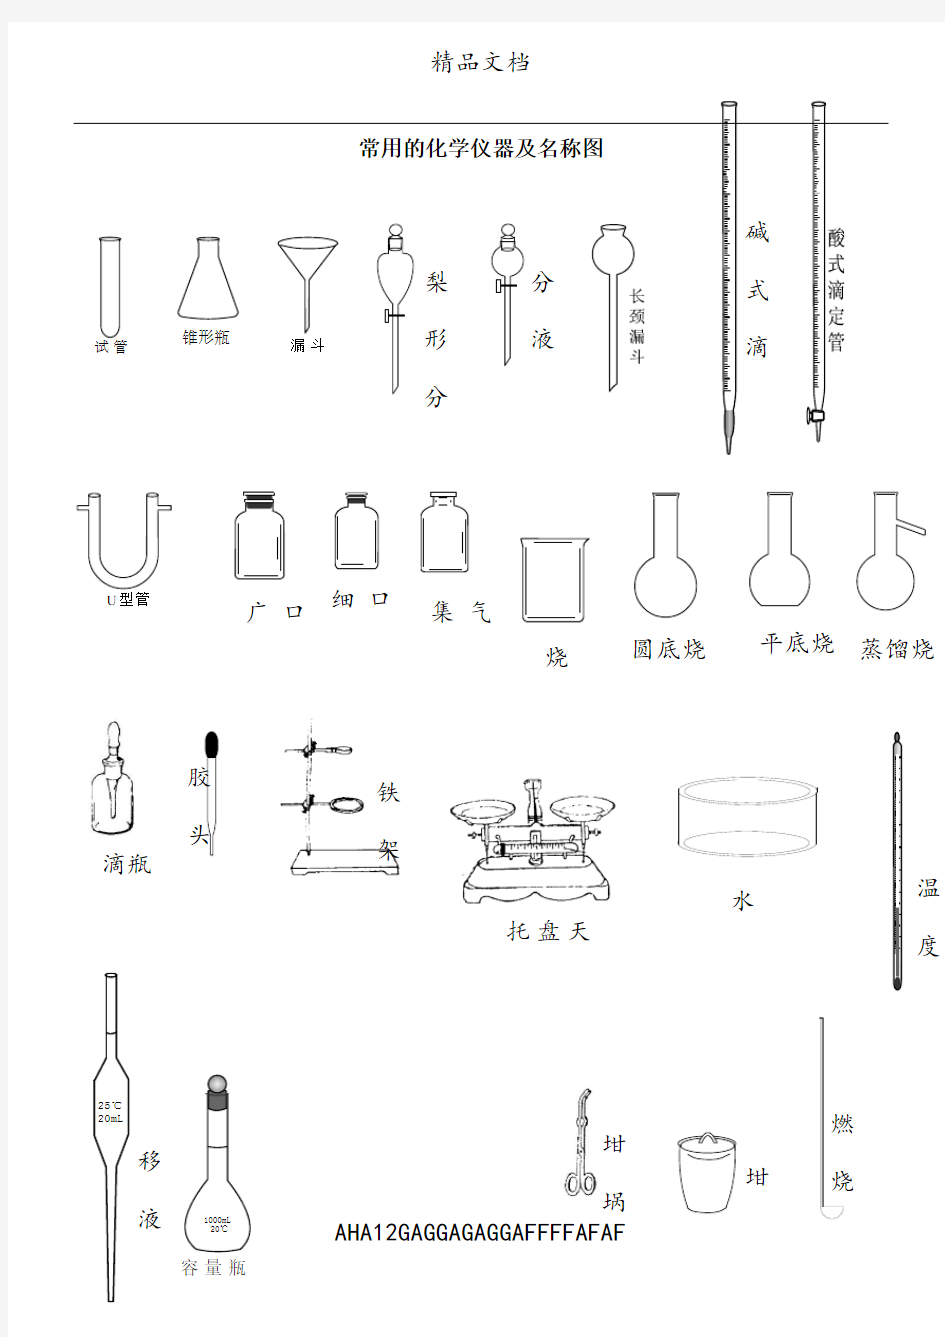 常用的化学仪器及名称图(整理)87056